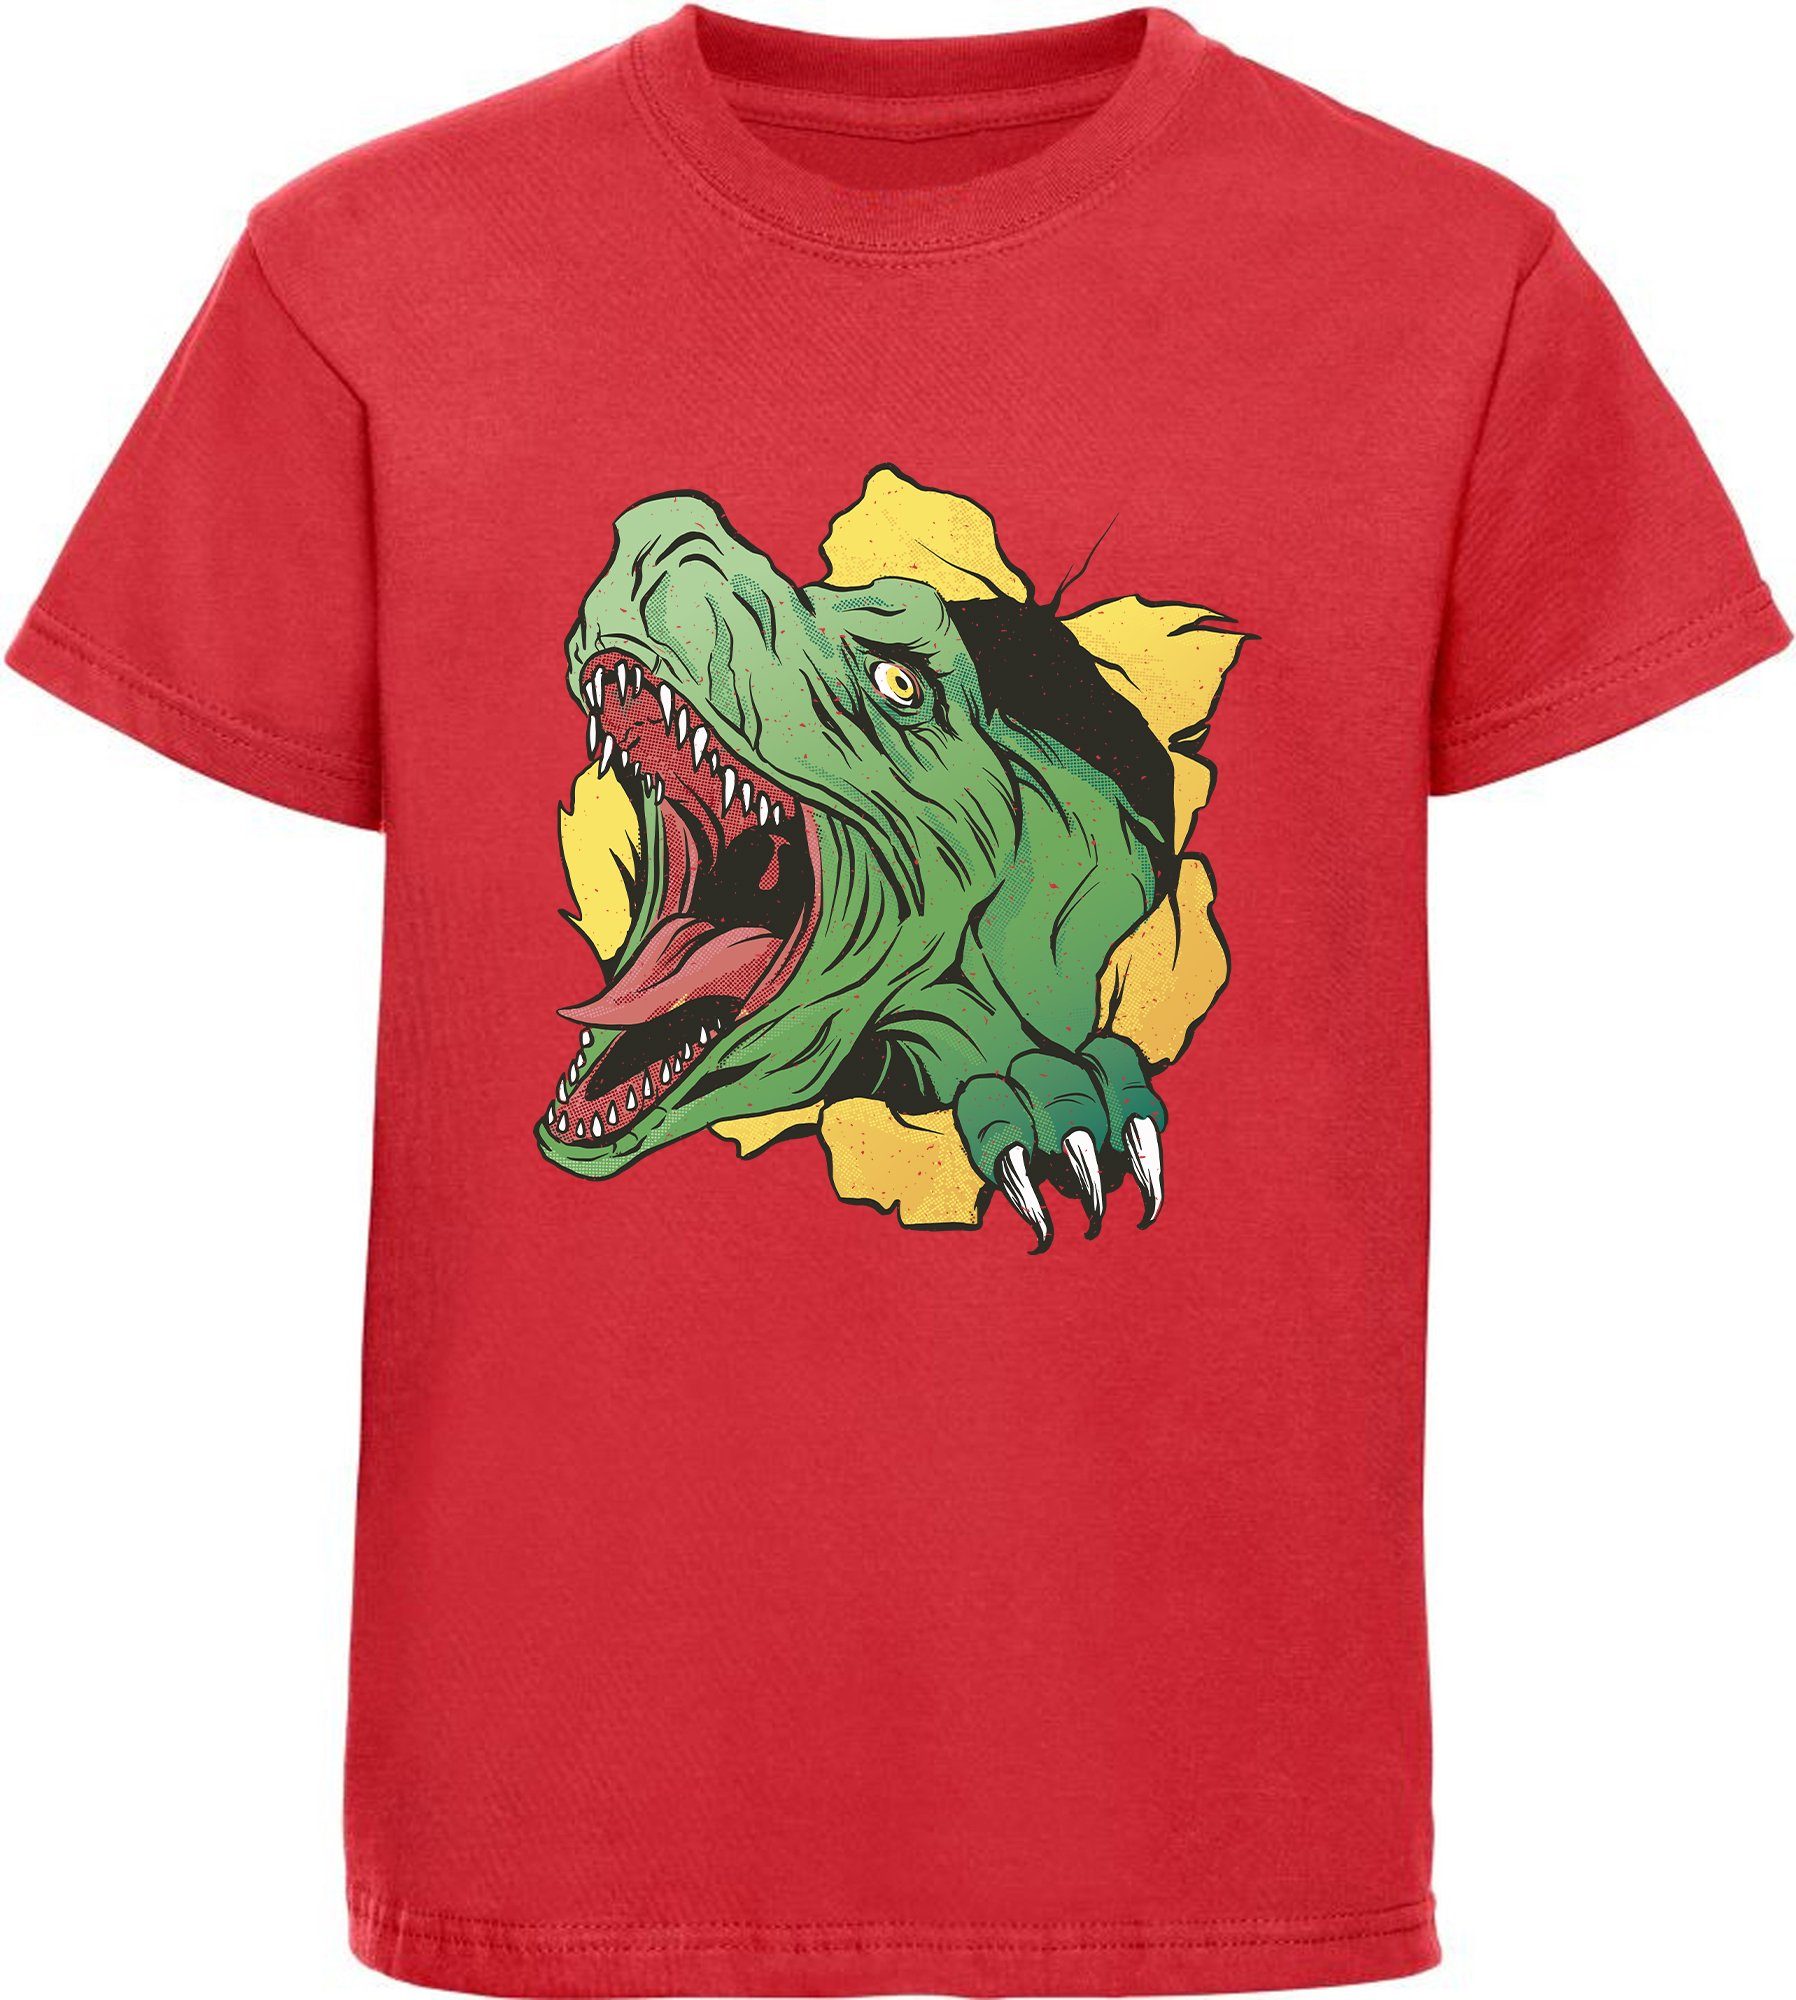 MyDesign24 Print-Shirt bedrucktes Kinder T-Shirt mit T-Rex Kopf Baumwollshirt mit Dino, schwarz, weiß, rot, blau, i68